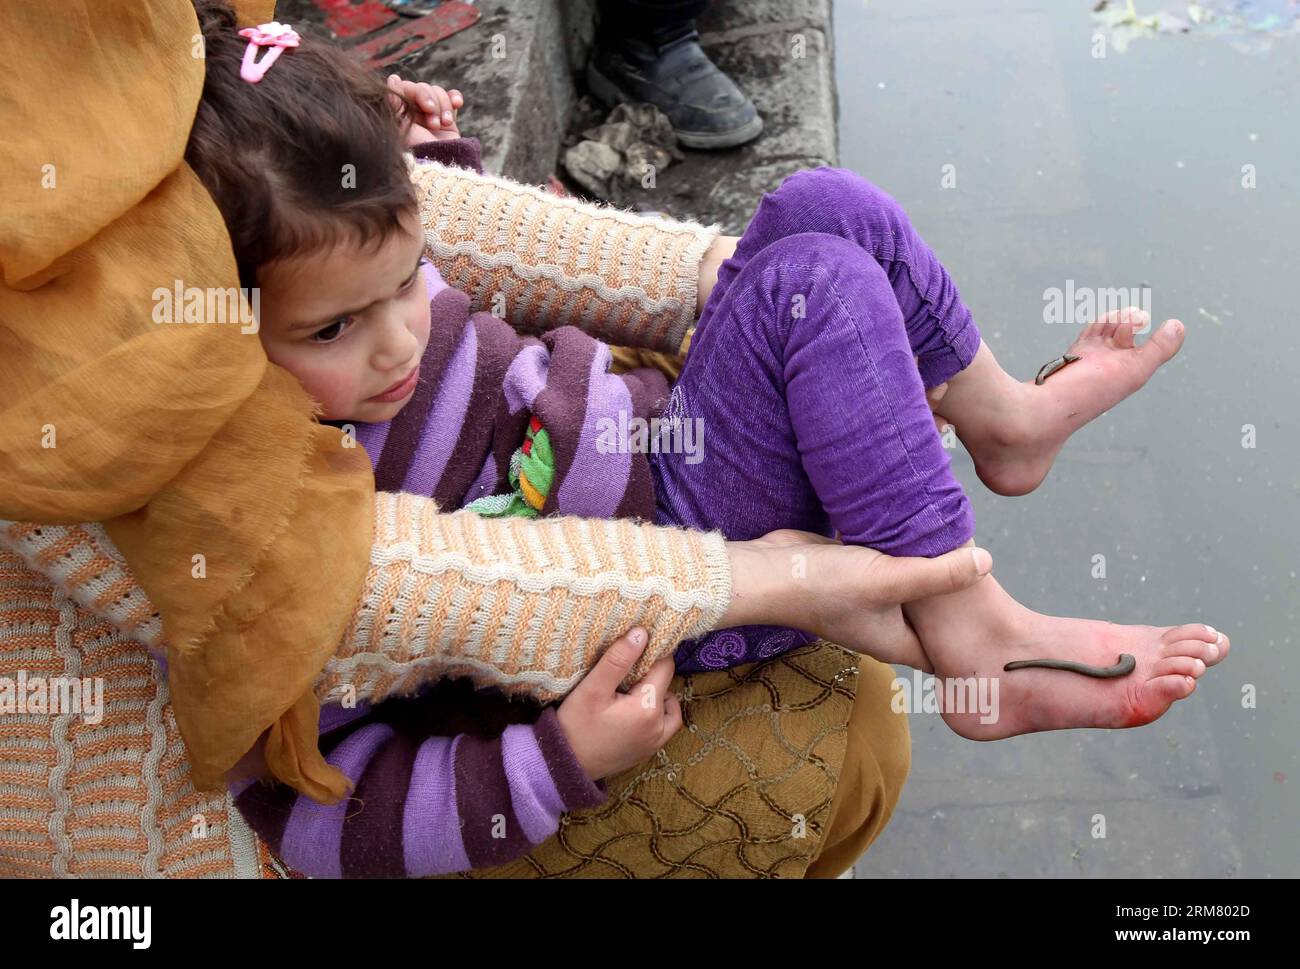 (140321) -- SRINAGAR, 21. März 2014 (Xinhua) -- Blutegel saugen Blut aus den Füßen eines Kindes als Teil einer Behandlung, am Rande von Srinagar, der Sommerhauptstadt des von Indien kontrollierten Kaschmirs, 21. März 2014. Traditionelle medizinische Arbeiter in der indischen kontrollierten Kaschmir verwenden Blutegel, um Hautkrankheiten und Beschwerden wie Arthritis, Gicht, chronische Kopfschmerzen und Sinusitis zu behandeln. (Xinhua/Javed dar) (srb) KASHMIR-SRINAGAR-TRADITIONELLE BEHANDLUNG-BLUTEGEL PUBLICATIONxNOTxINxCHN Srinagar 21. März 2014 XINHUA Blutegel saugen Blut aus den Füssen eines Kindes als Teil einer Behandlung AM Rande von Srin Stockfoto